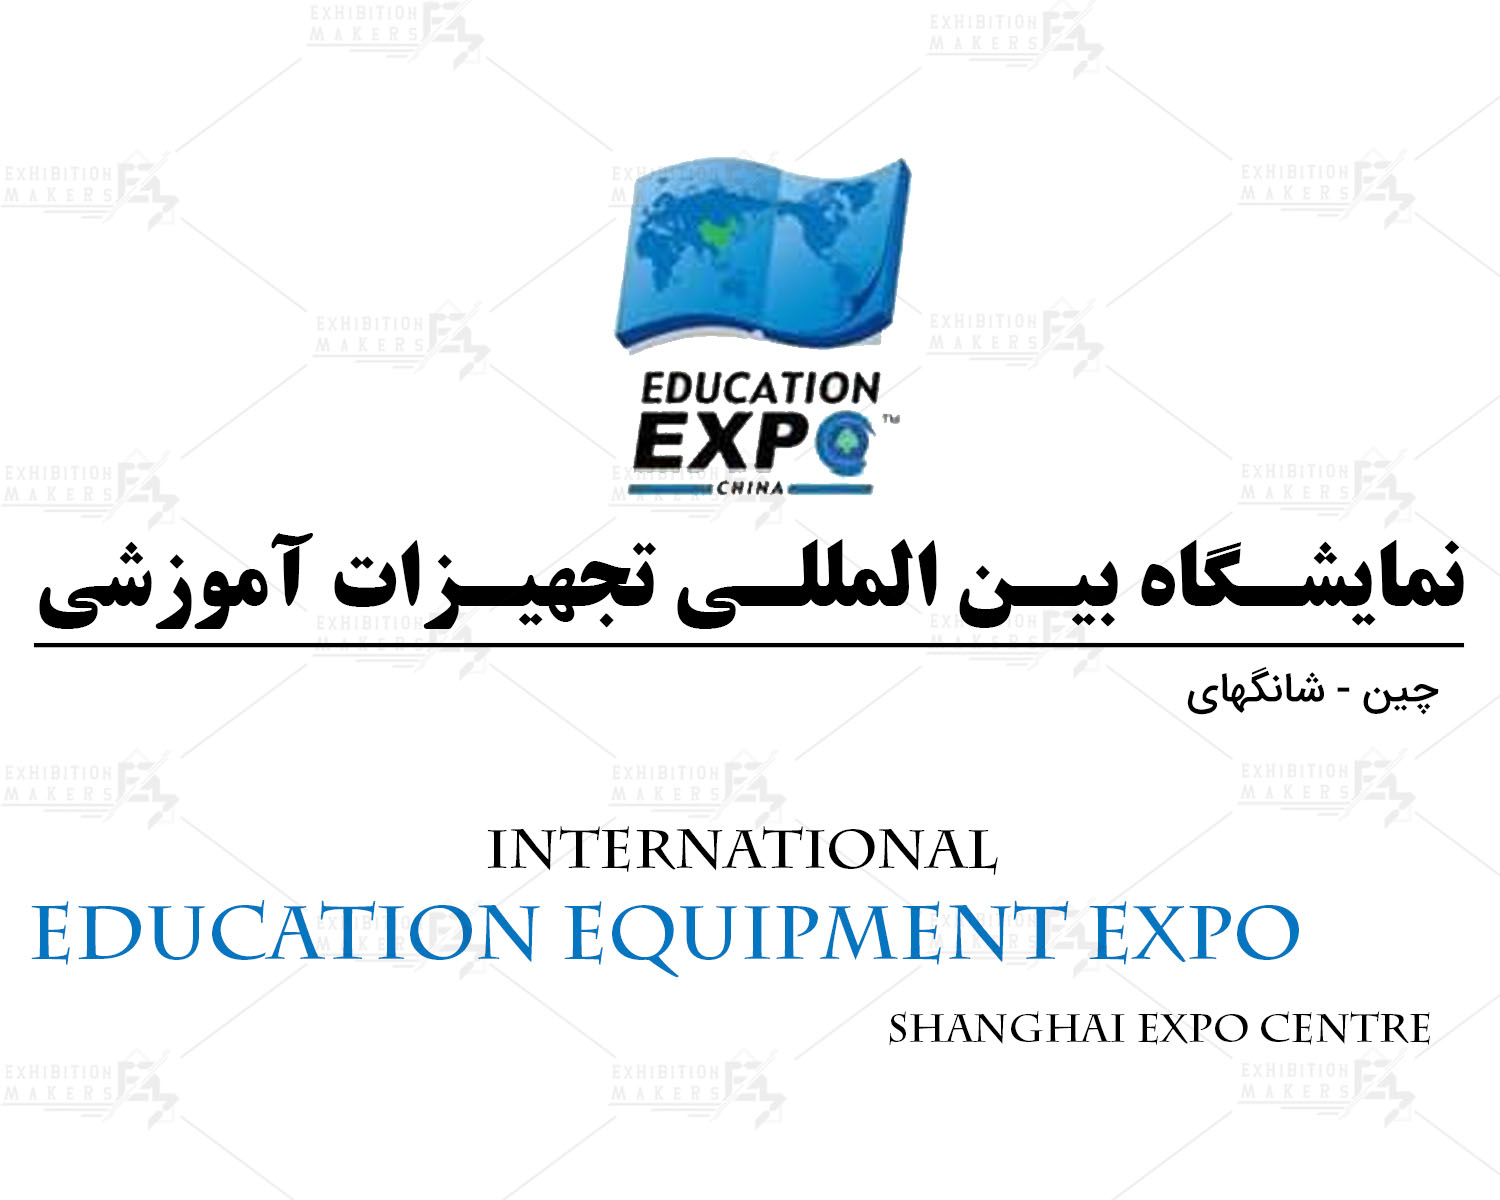 نمایشگاه بین المللی تجهیزات آموزشی بین المللی شانگهای چین